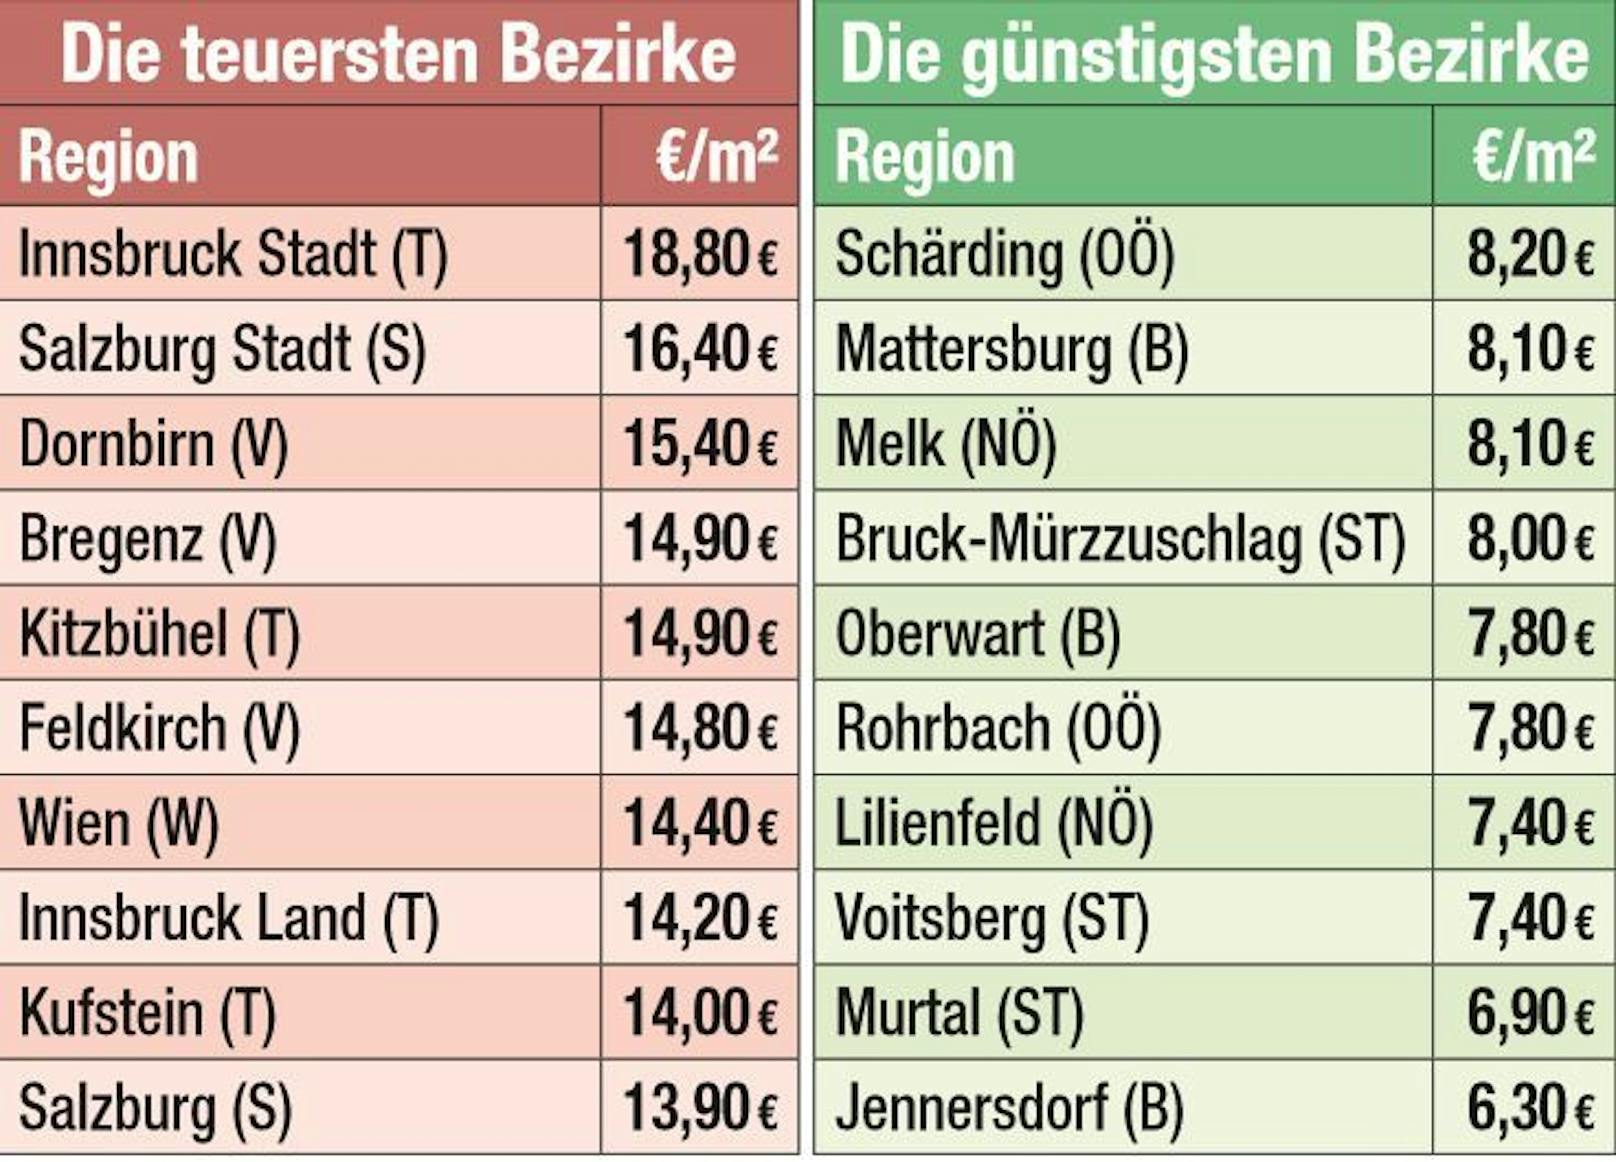 Die teuersten und billigsten Bezirke Österreichs in Hinsicht auf die Mietpreise.